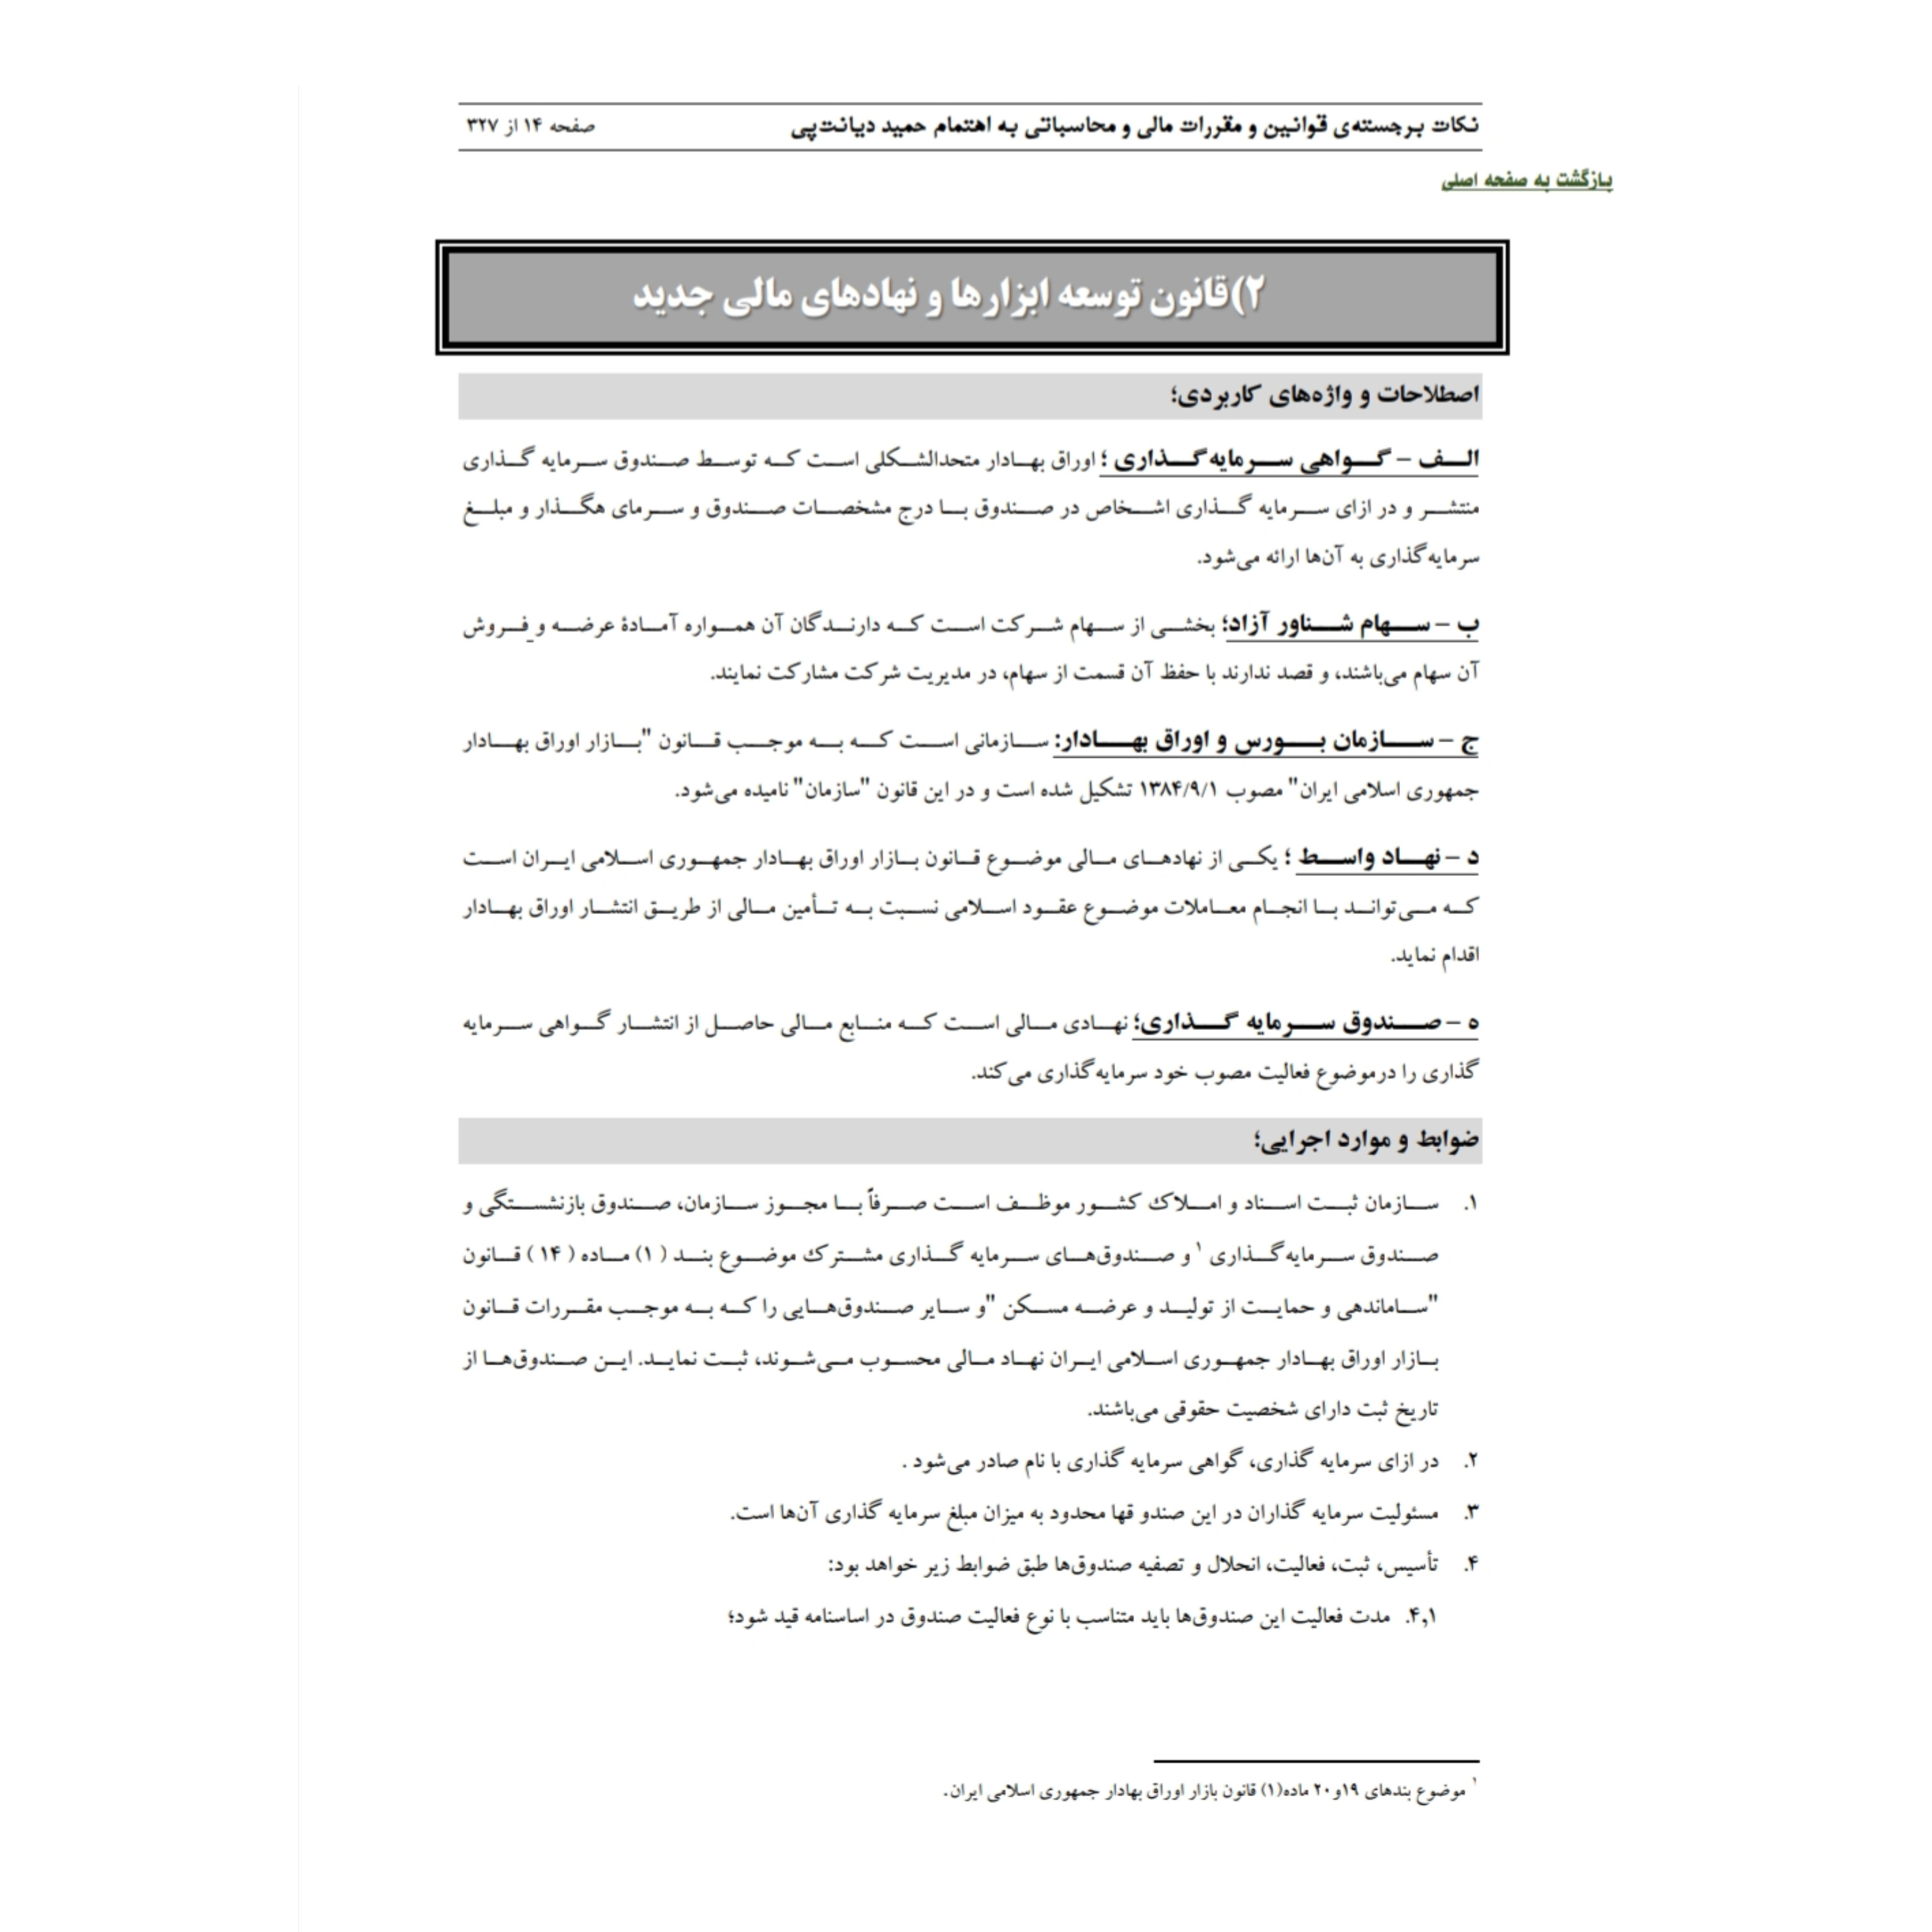 نکات برجسته ی قوانین و مقررات مالی و محاسباتی/ حمید دیانت پی